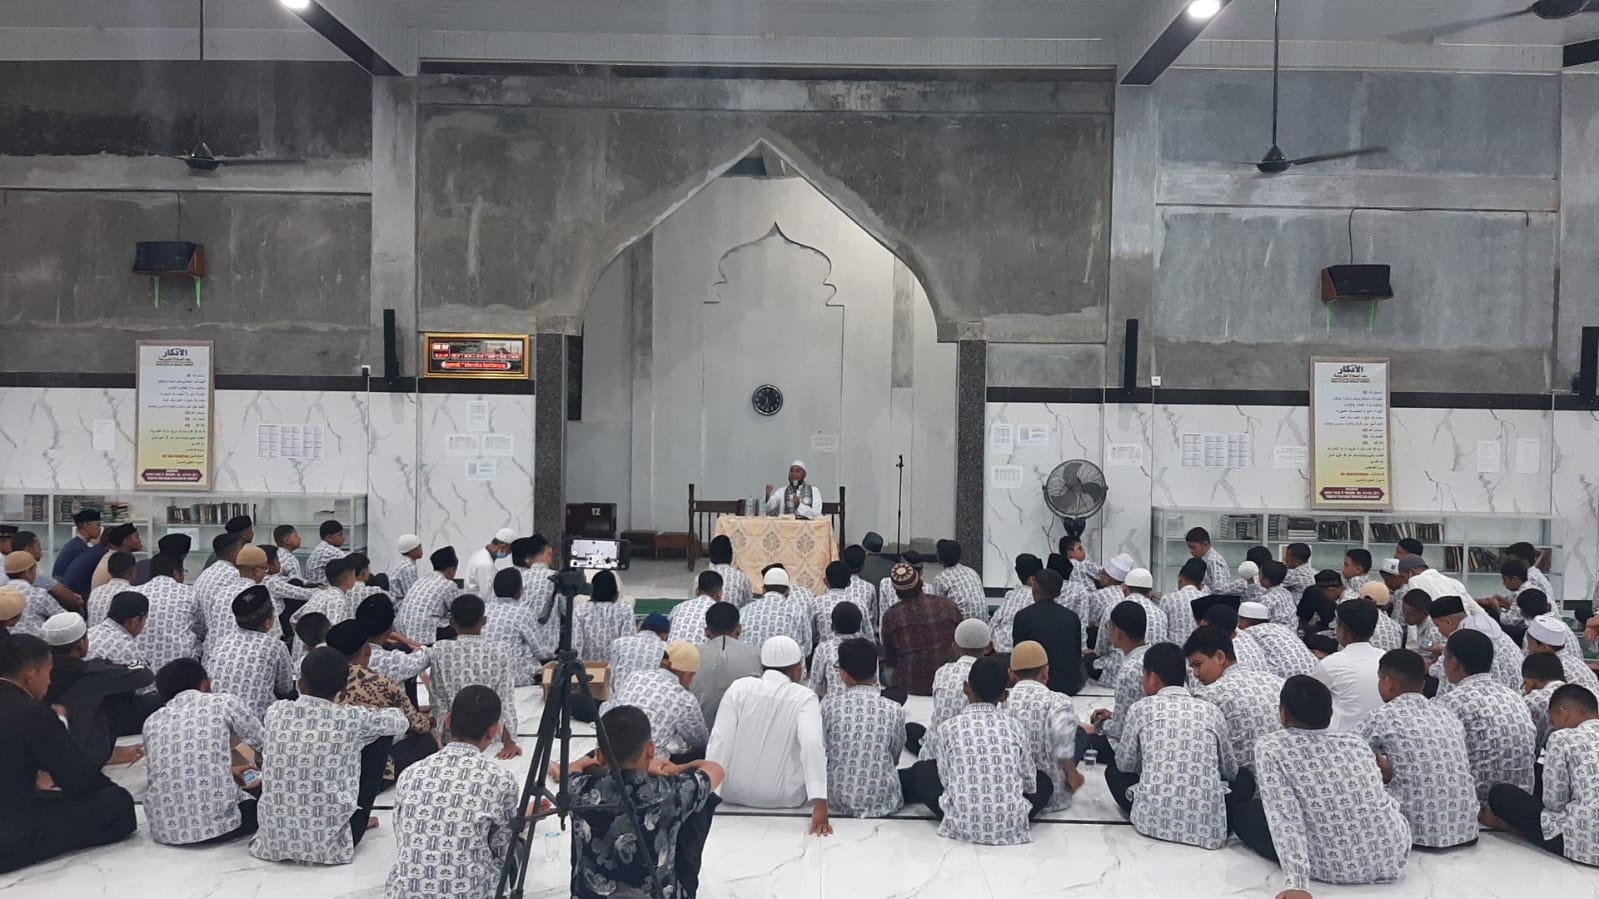 Ketua MIUMI Aceh Isi Pengajian 'Urgensi dan Keutamaan Belajar Ilmu Syari' di Dayah Arun Lhokseumawe